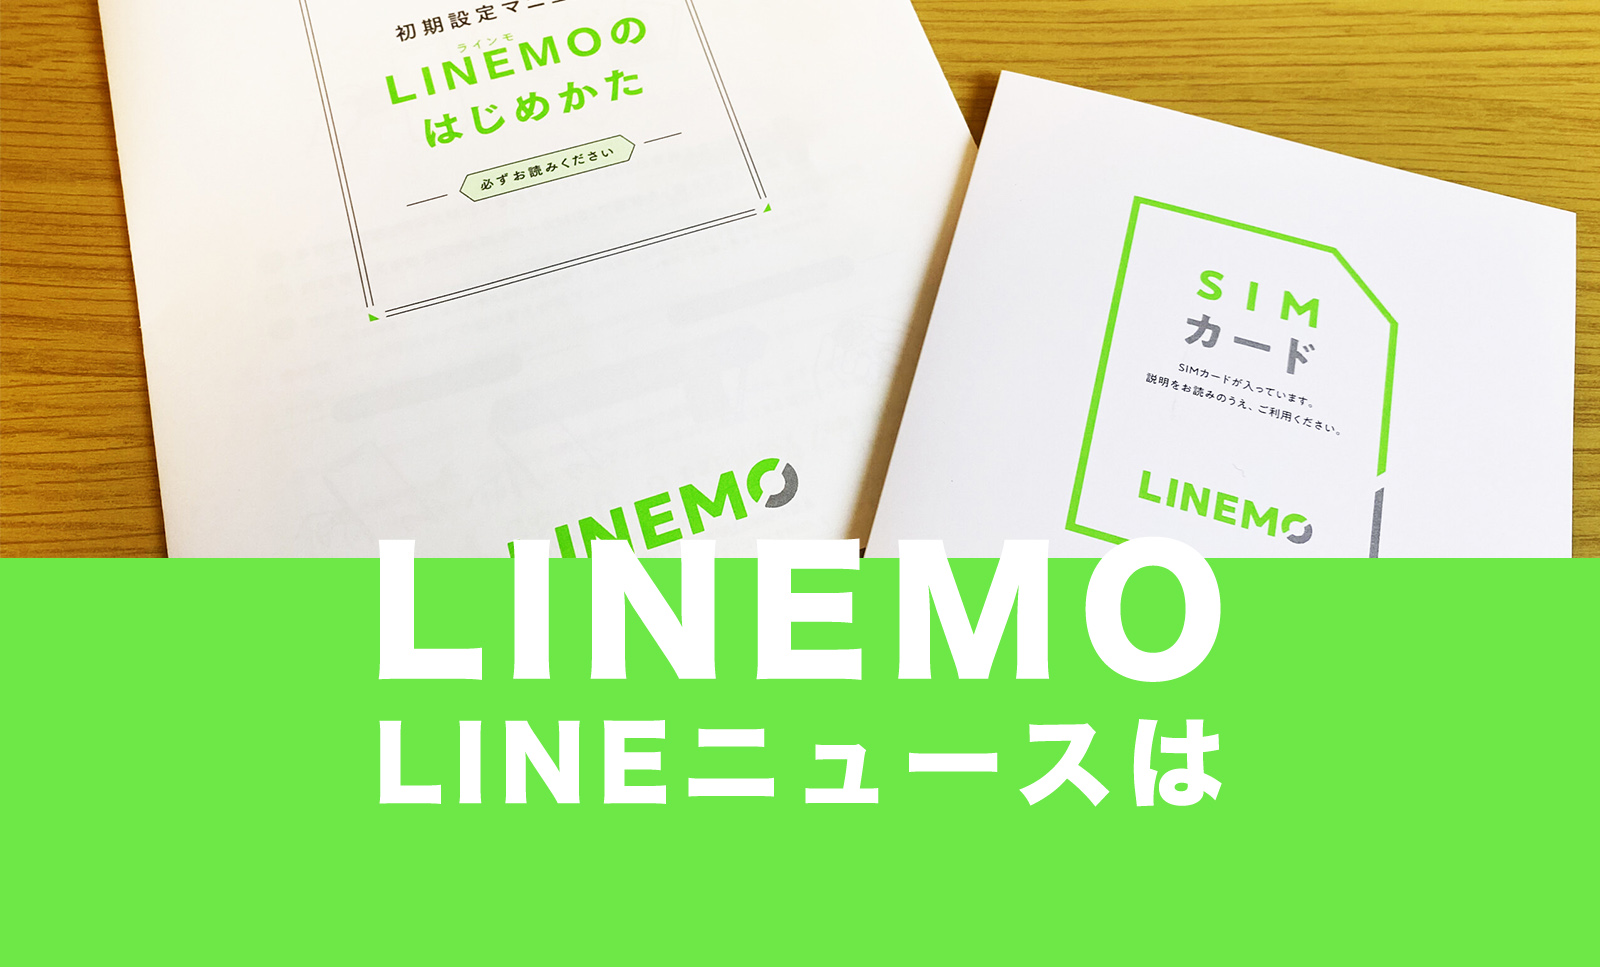 LINEMO(ラインモ)でLINEニュースはギガフリー対象外。のサムネイル画像